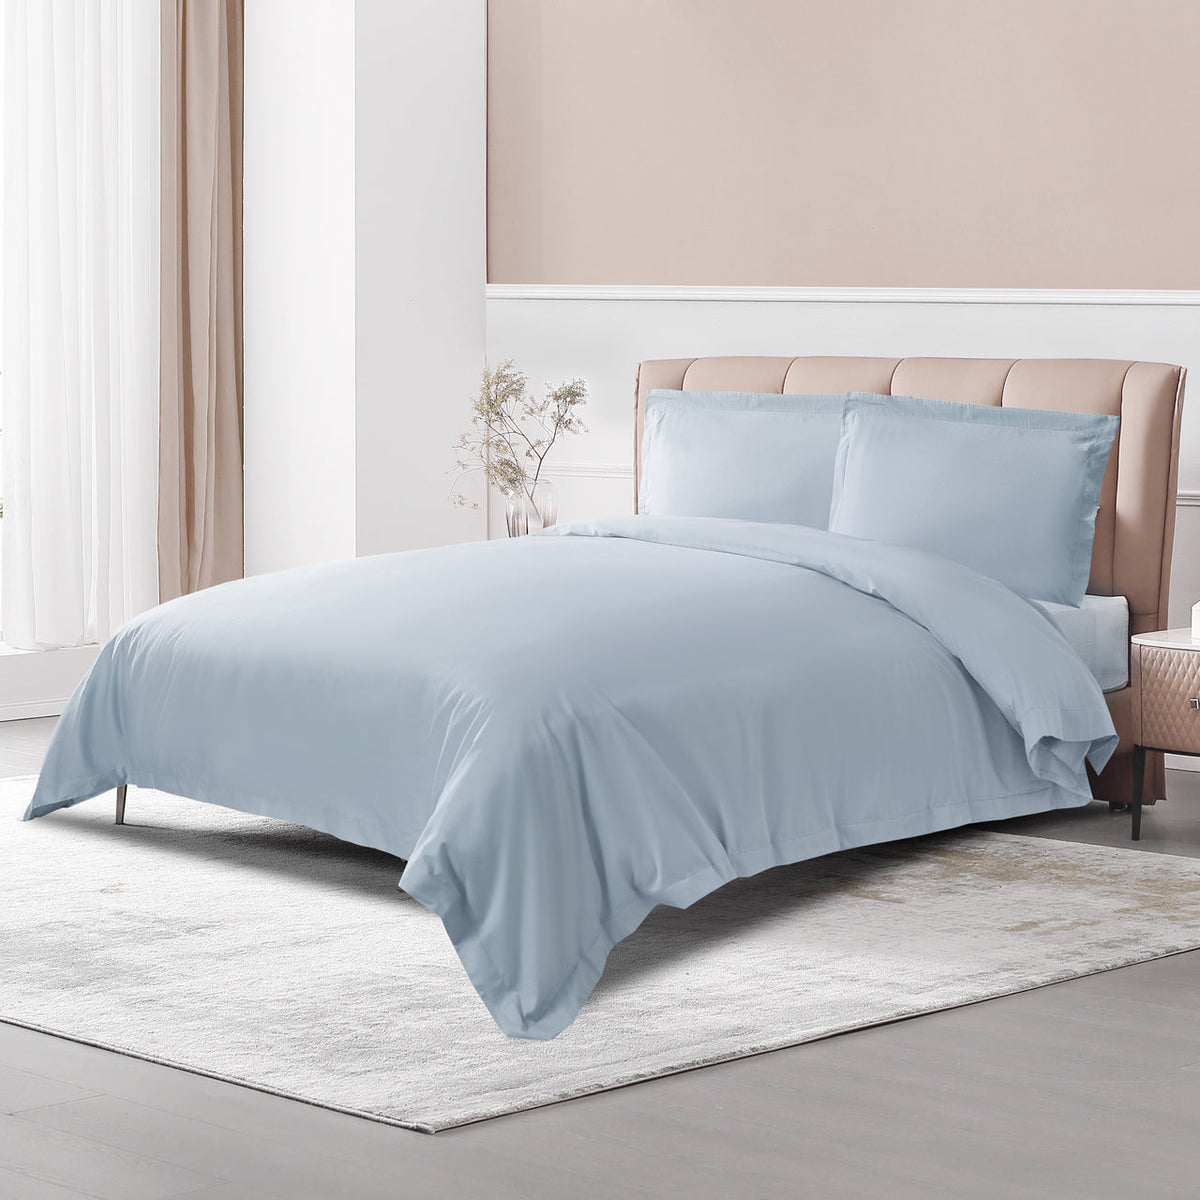 Luxury & Elegant Misty Blue 100% Long-Staple Cotton Duvet Cover Set (3 Pieces)